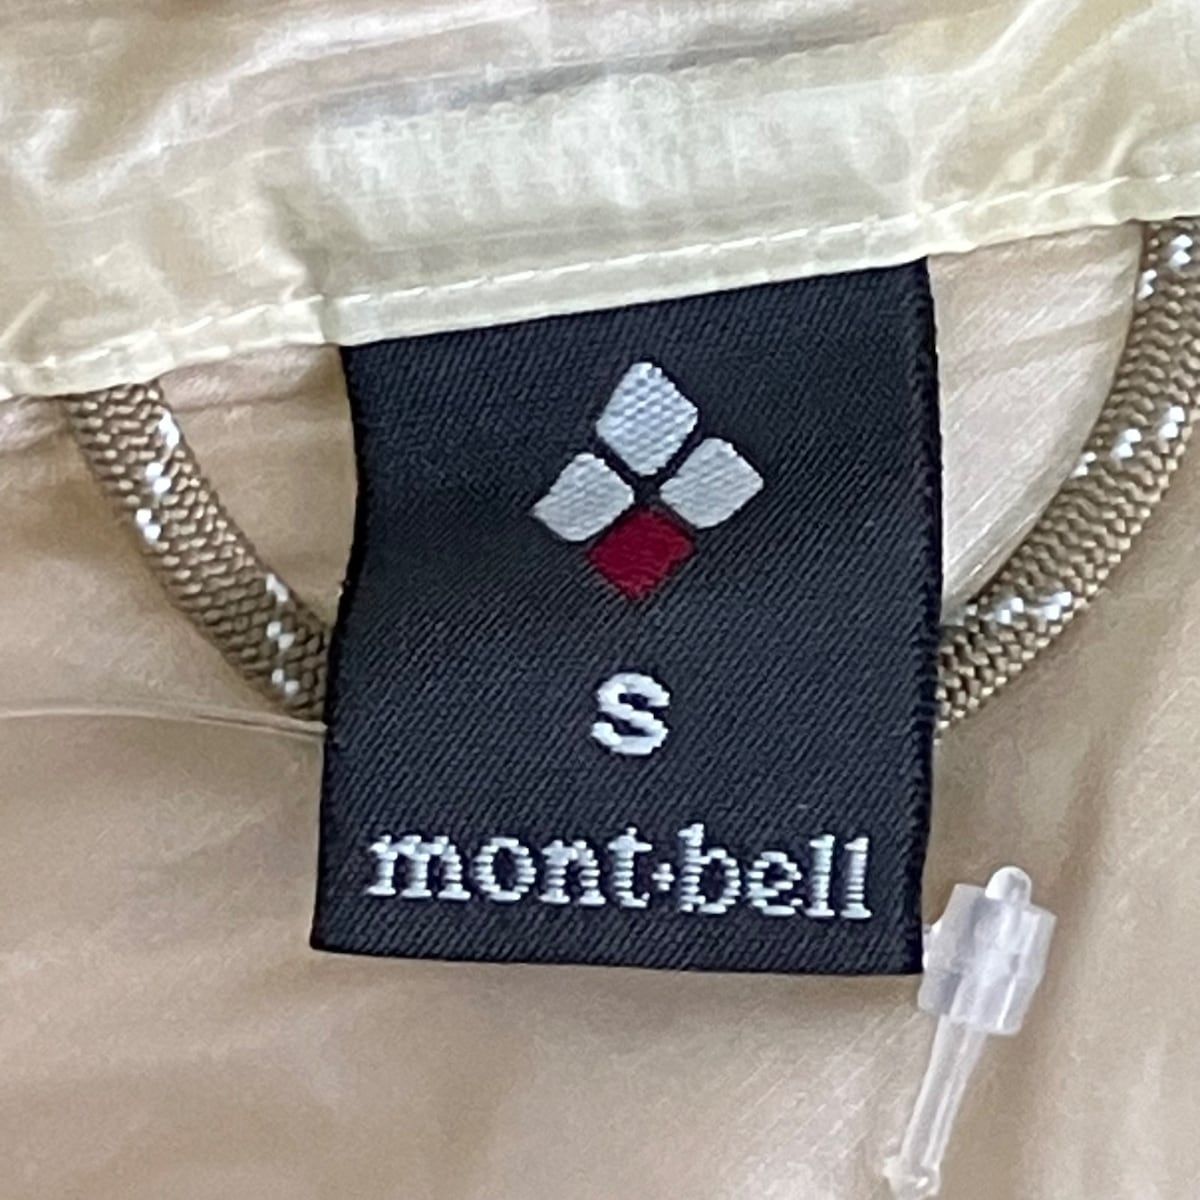 mont-bell(モンベル) ダウンジャケット サイズS レディース 